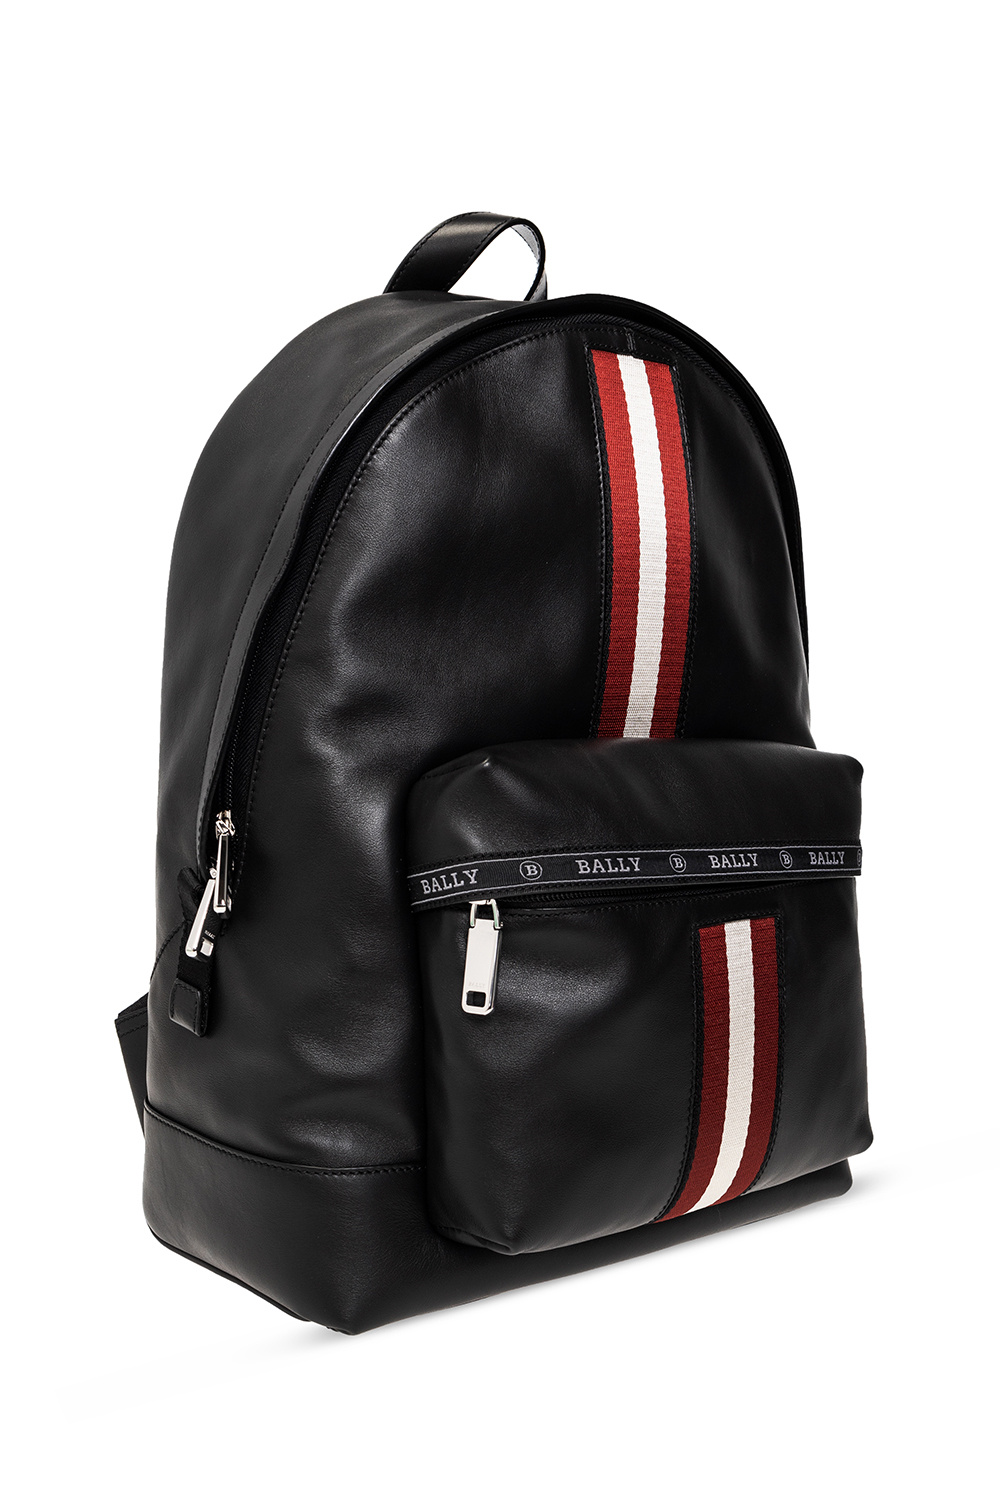 Bally ‘Harper’ backpack | Men's Bags | Vitkac